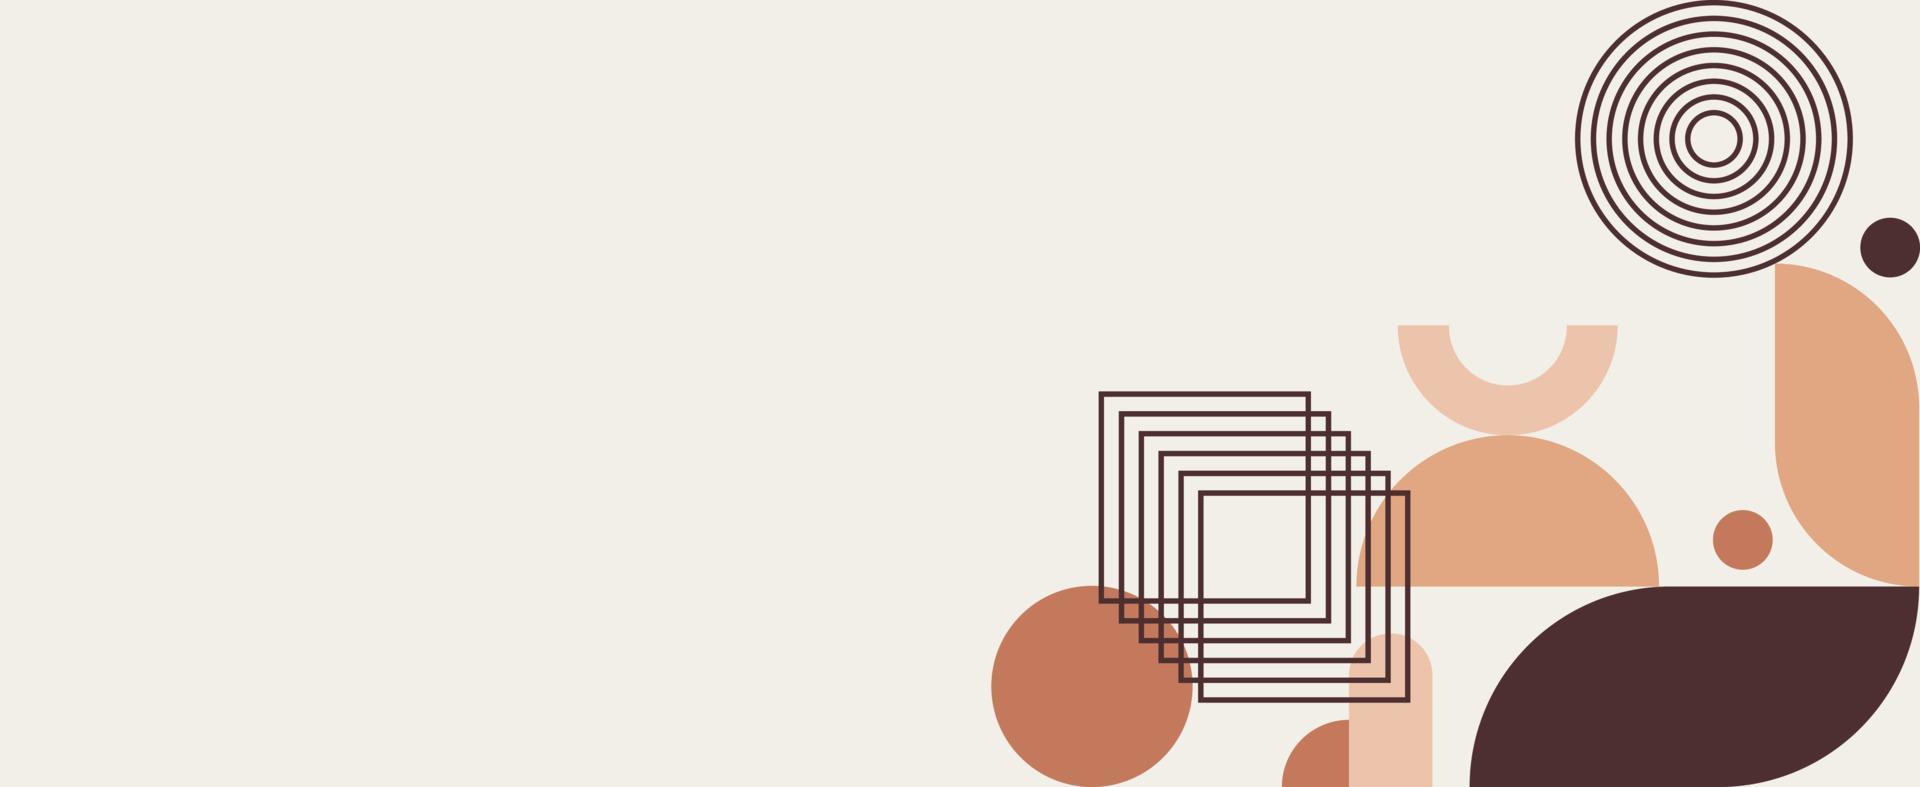 banner web geométrico bauhaus. diseño abstracto con diferentes formas y ojos. vector